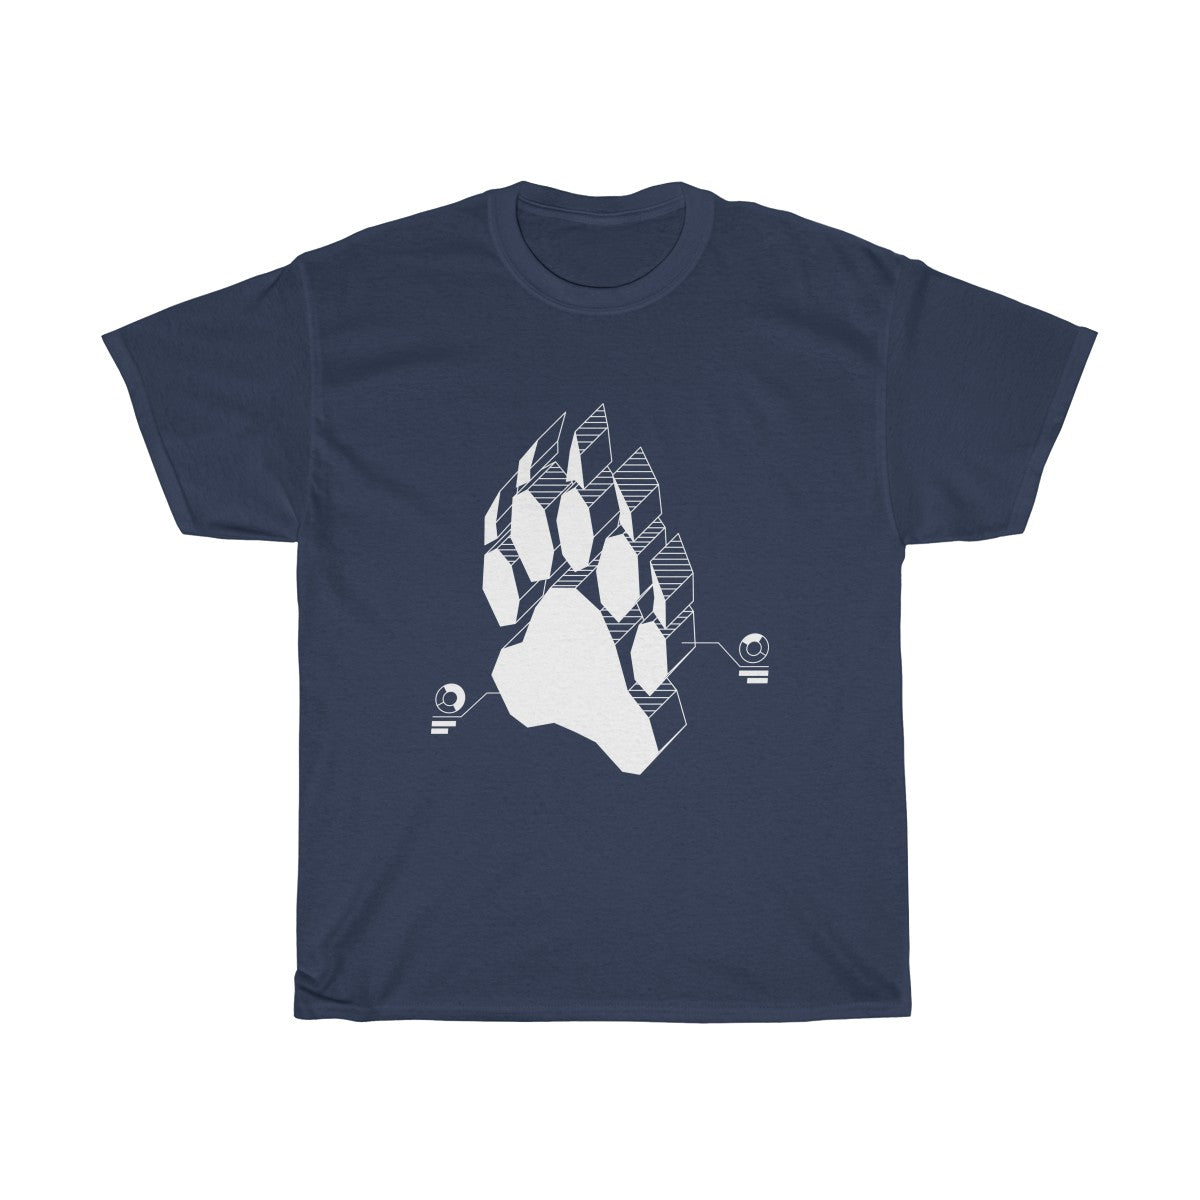 Techno Bear - T-Shirt T-Shirt Wexon Navy Blue S 